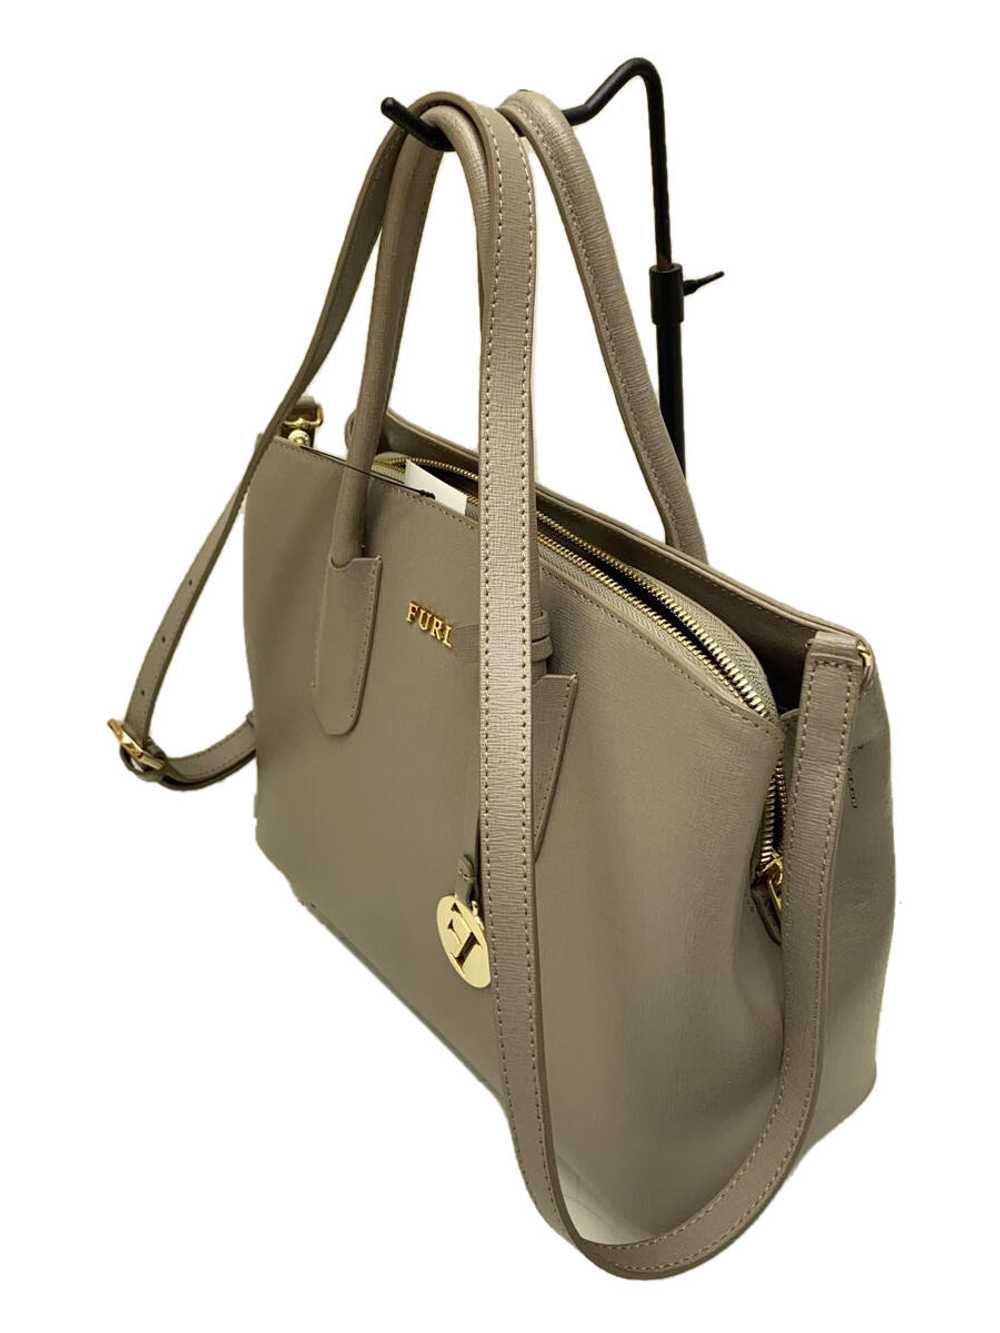 Furla/Handbag/Leather/Gray/Plain Bag - image 2